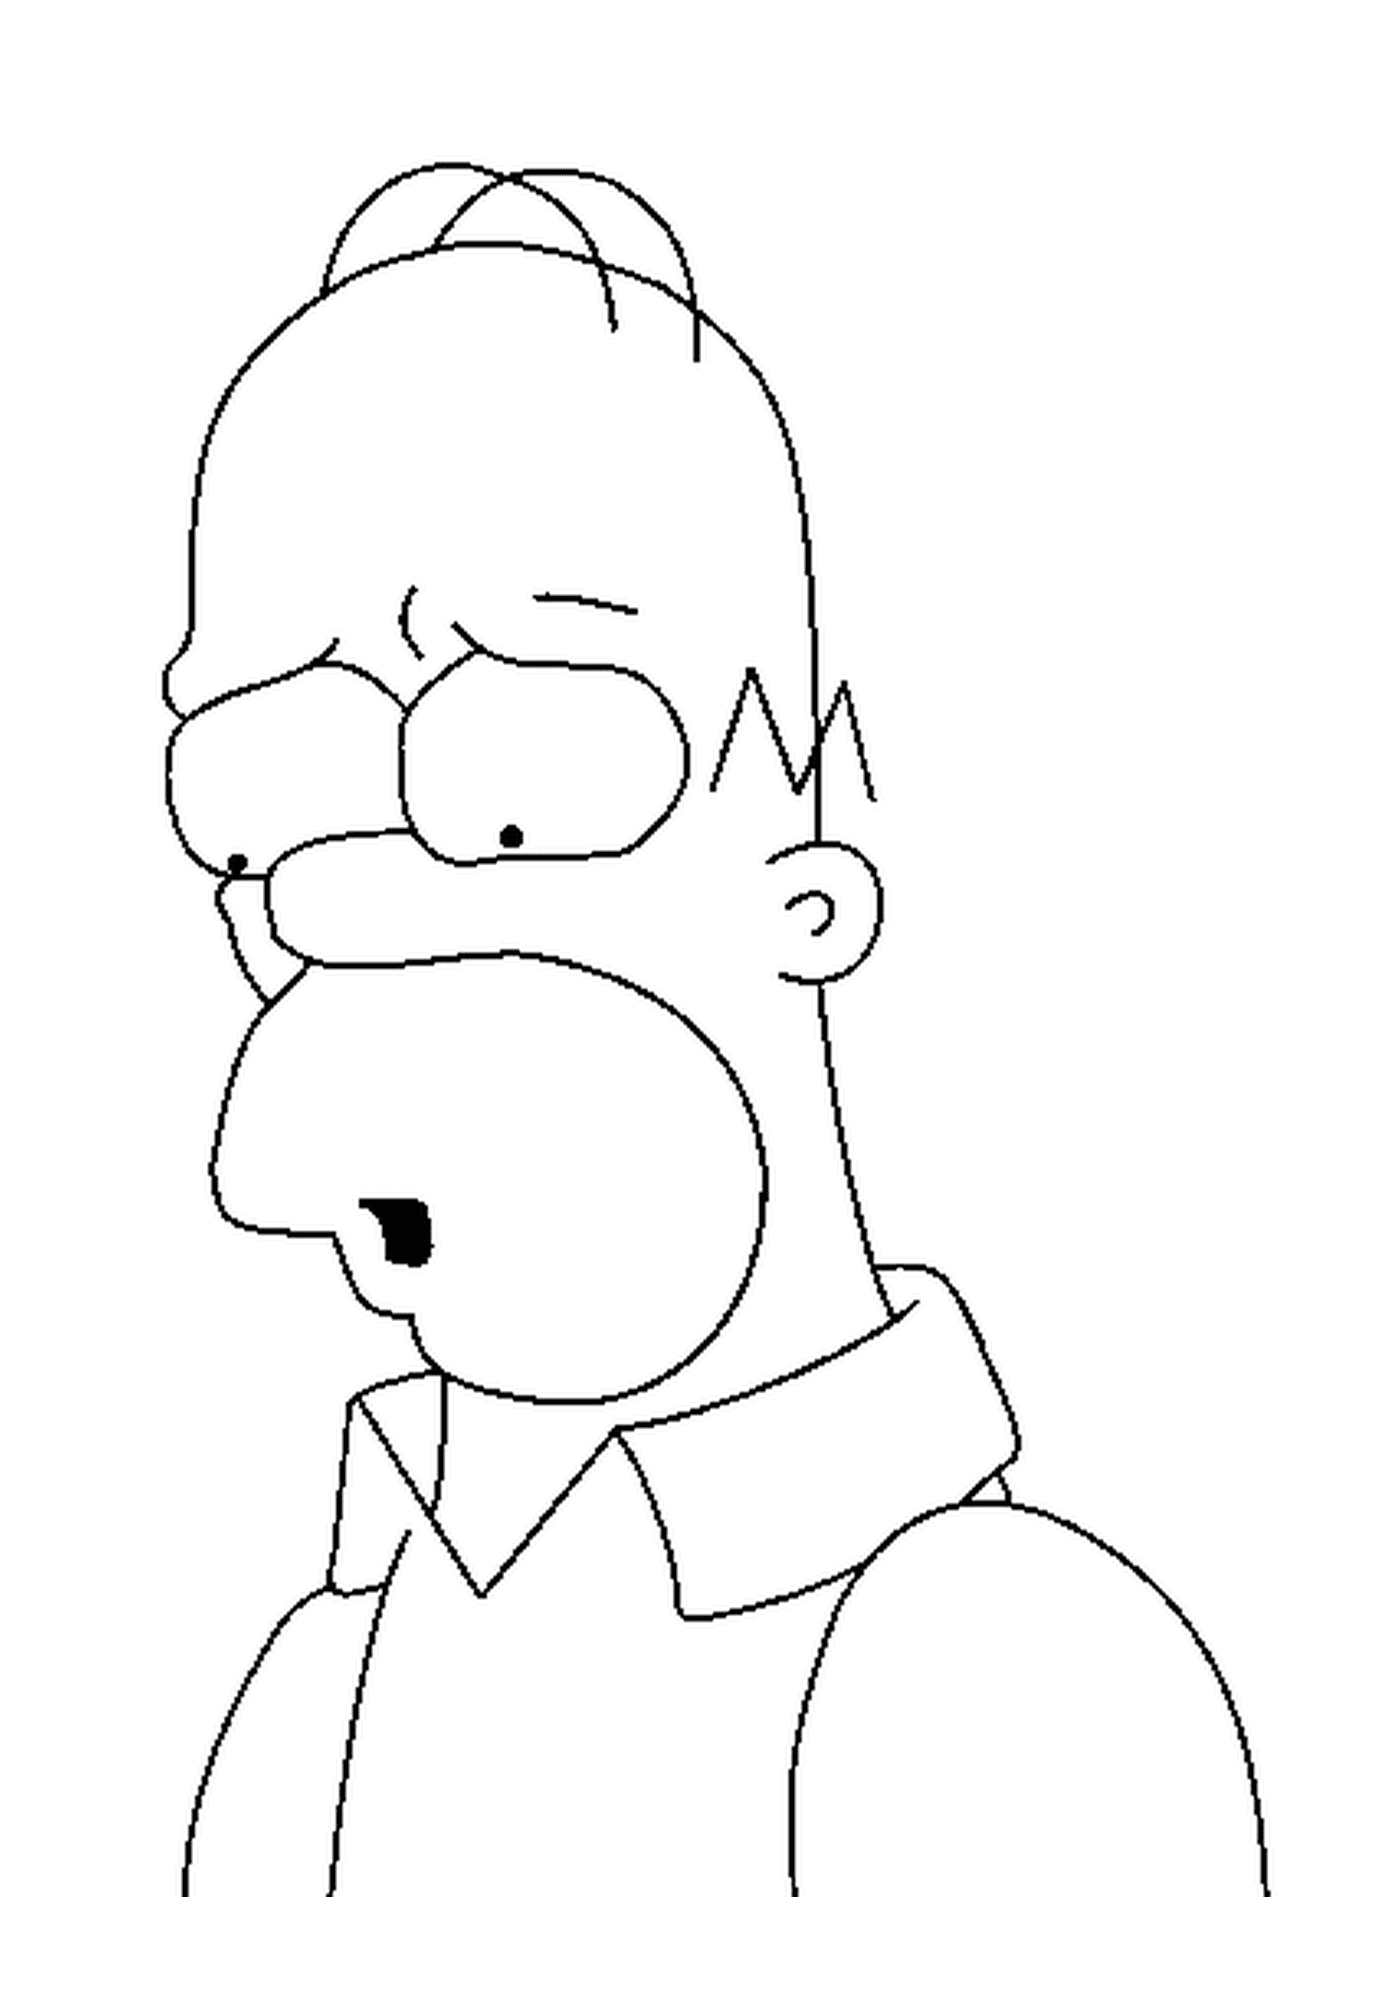  Homer Simpson, cara triste 